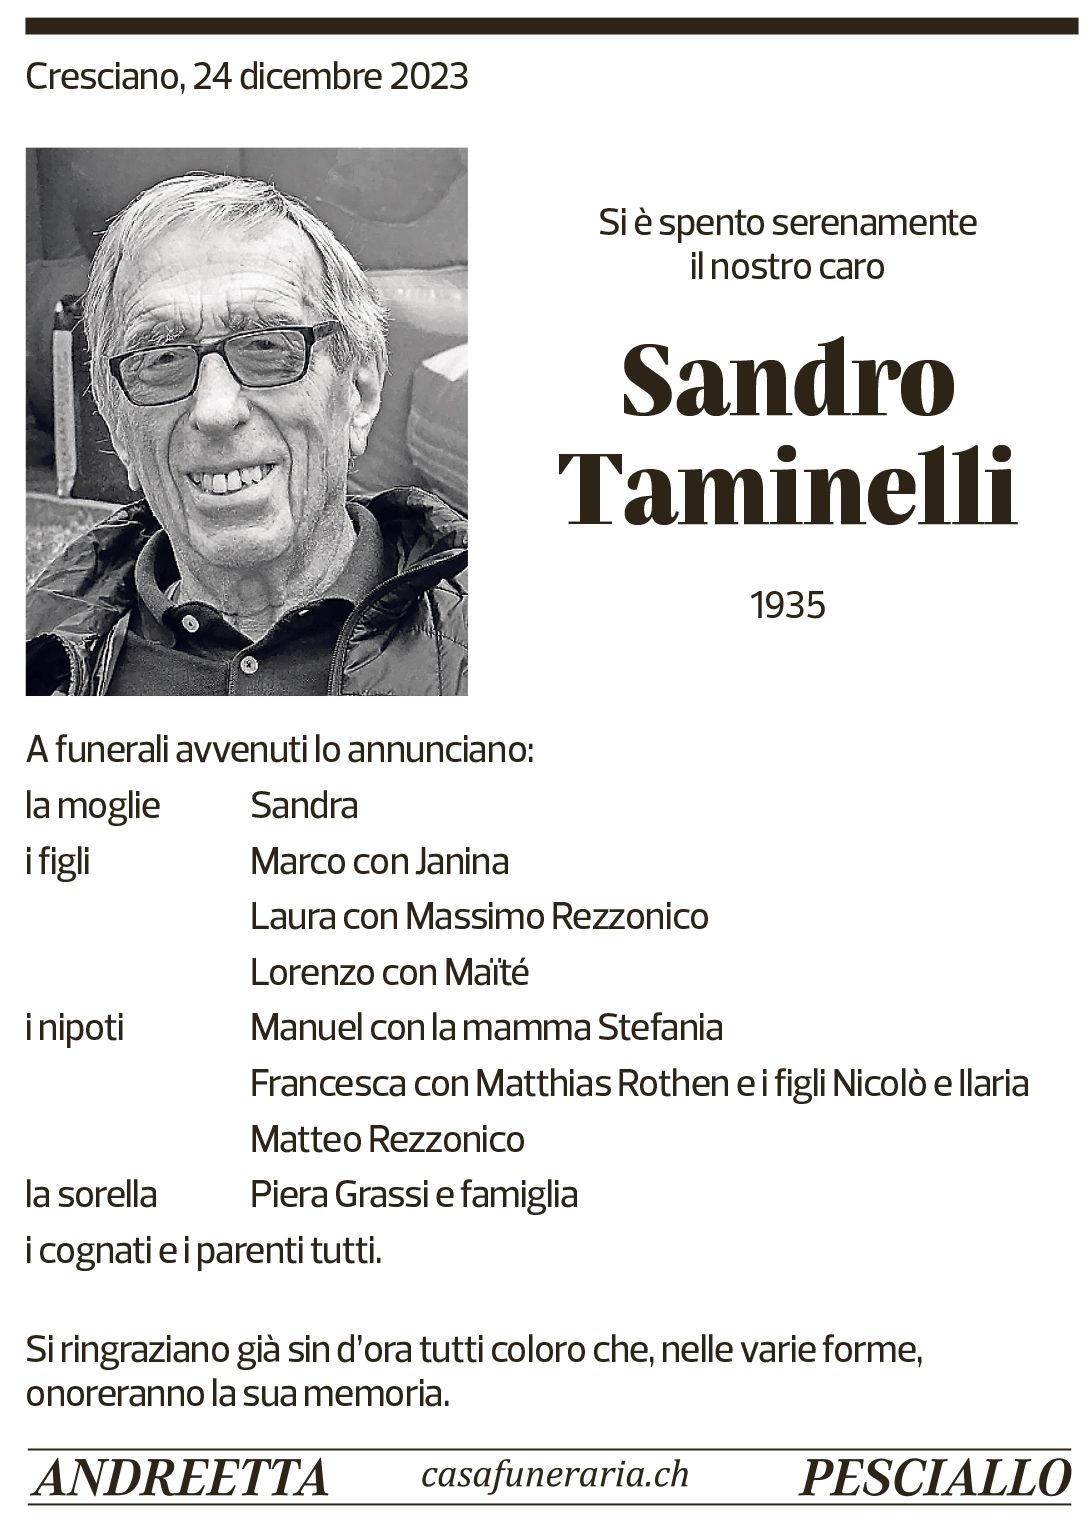 Annuncio funebre Sandro Taminelli